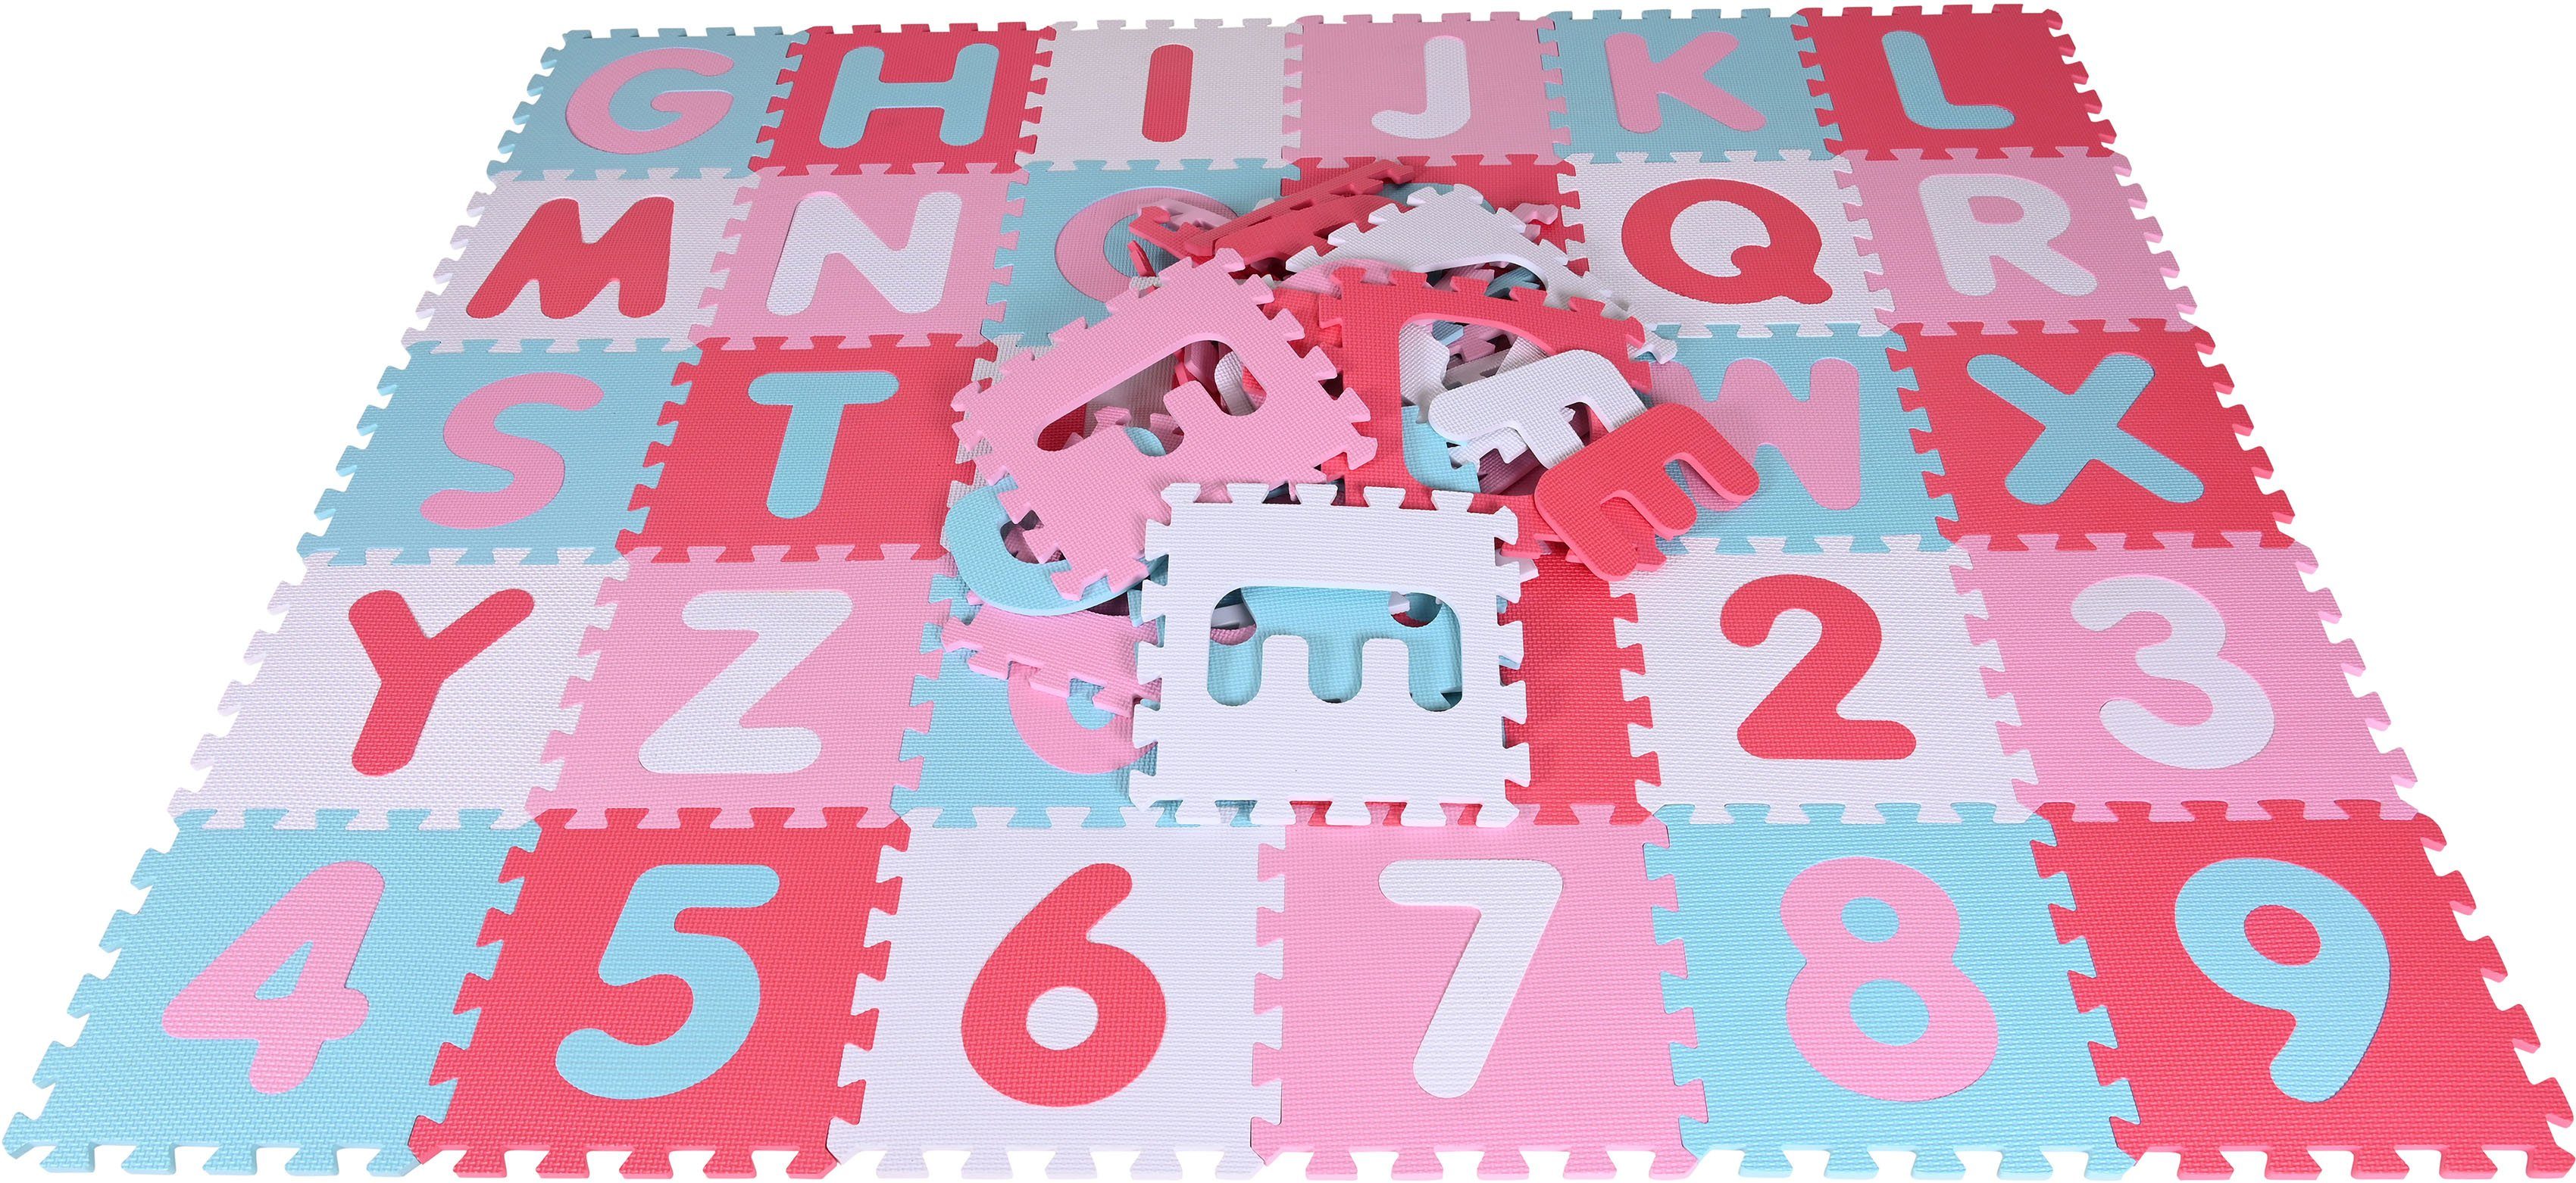 Zahlen, Puzzleteile, + Knorrtoys® Bodenpuzzle Alphabet Pink-rosa, Puzzle Puzzlematte,